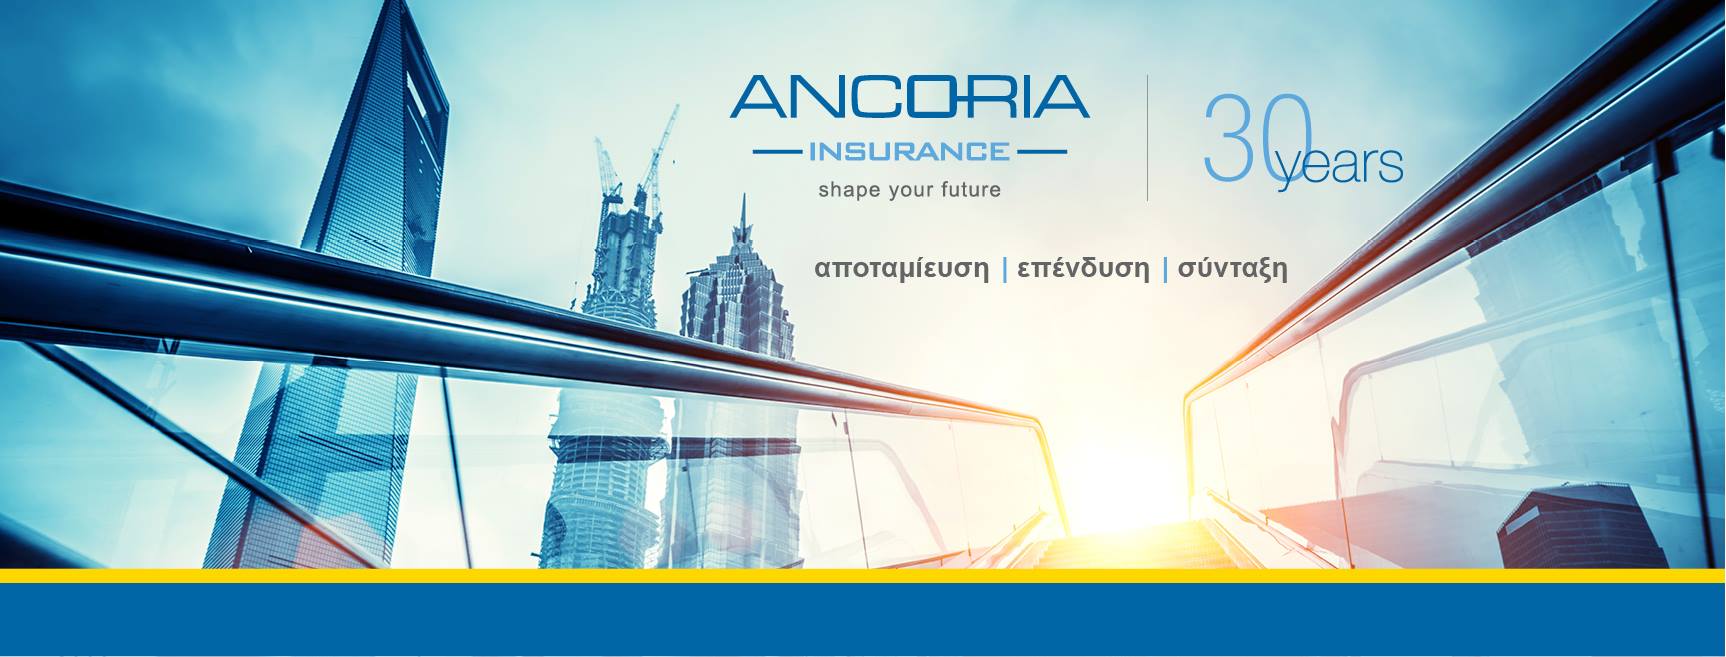 Ancoria Insurance 